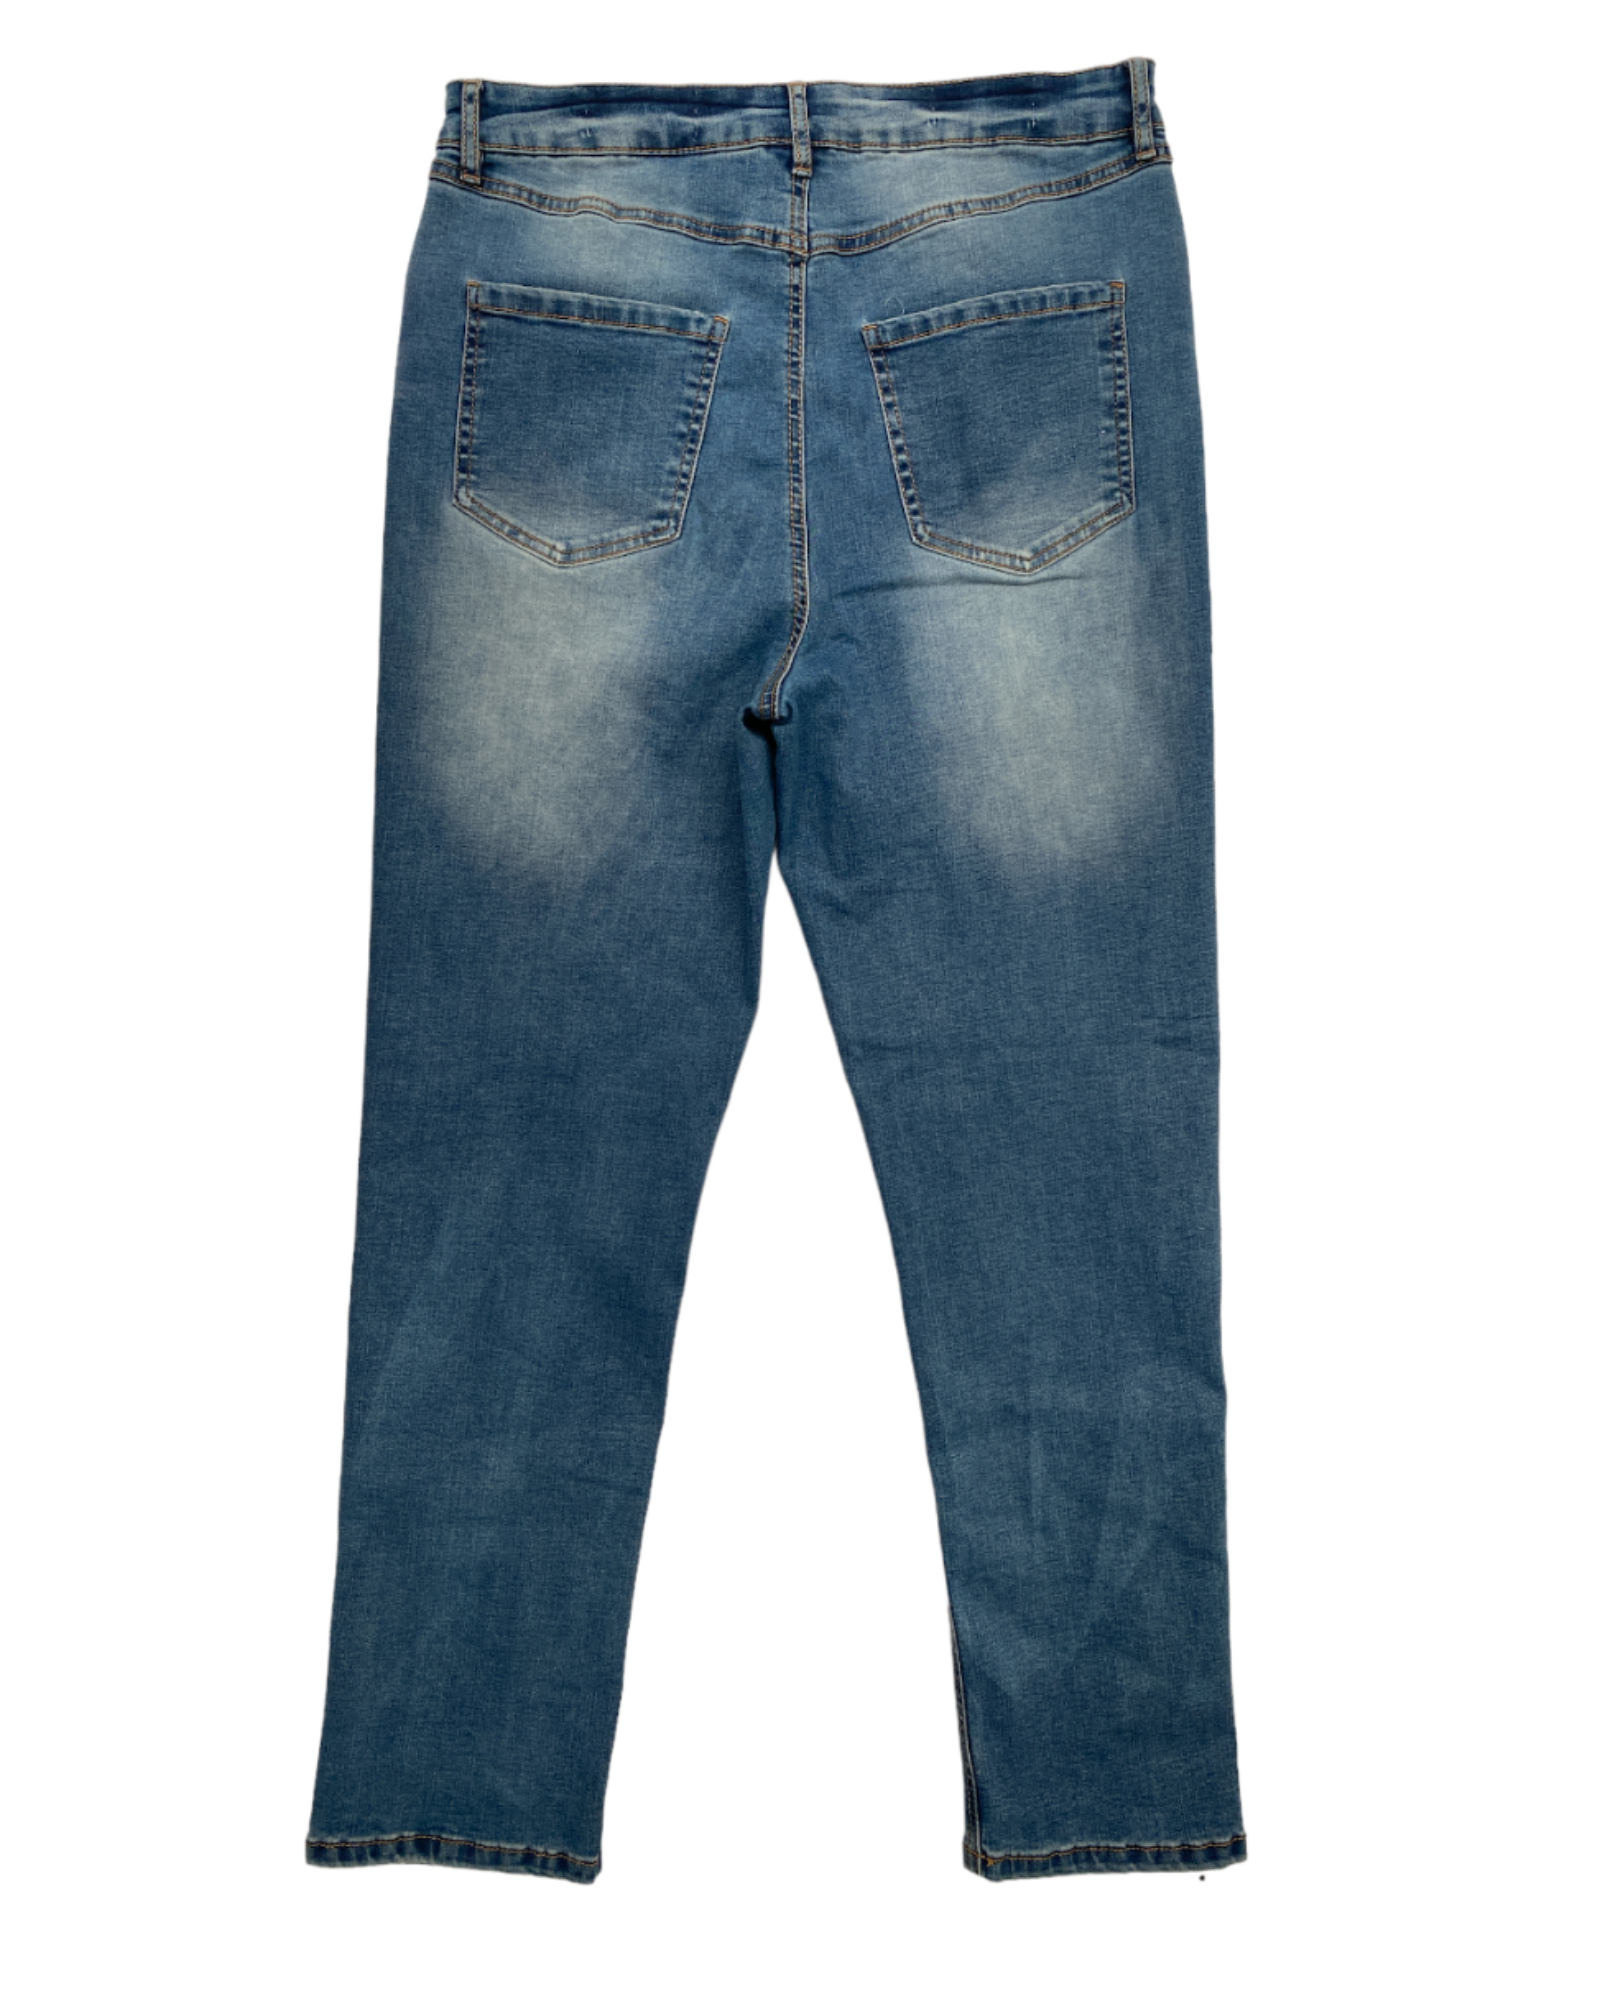 Jeans Rectos Suko jeans 